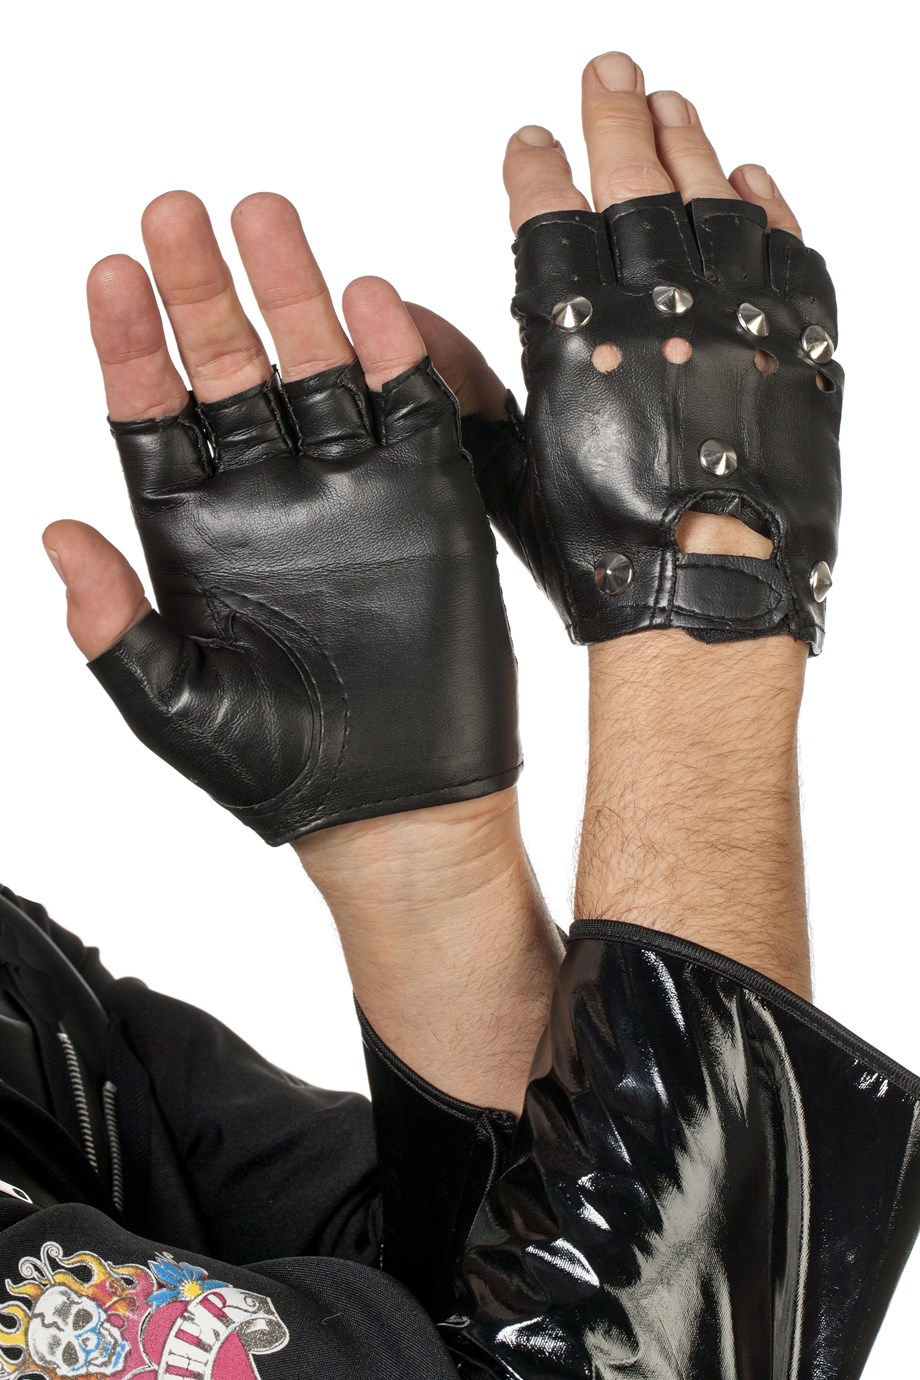 verkoop - attributen - Handschoenen punker/biker